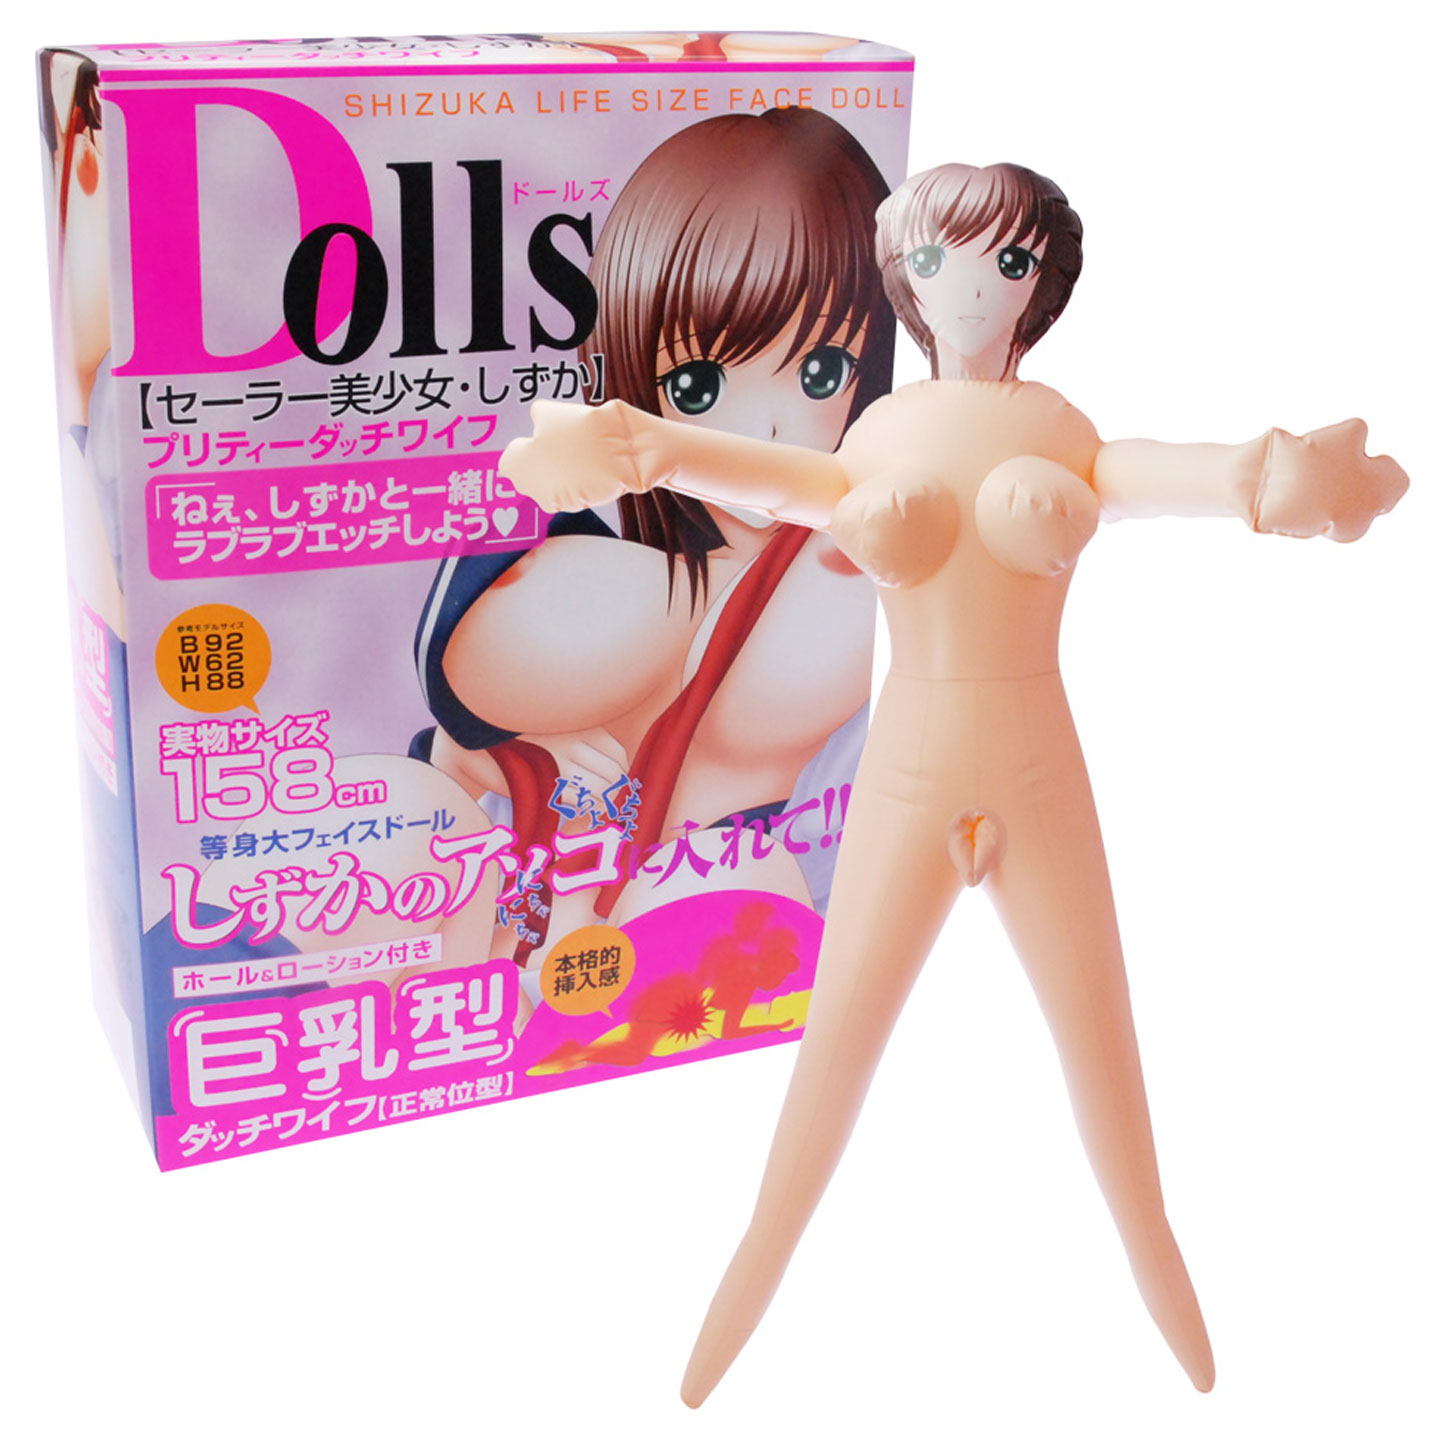 New Dolls Shizuka (Standard Type) - Wanta.co.uk